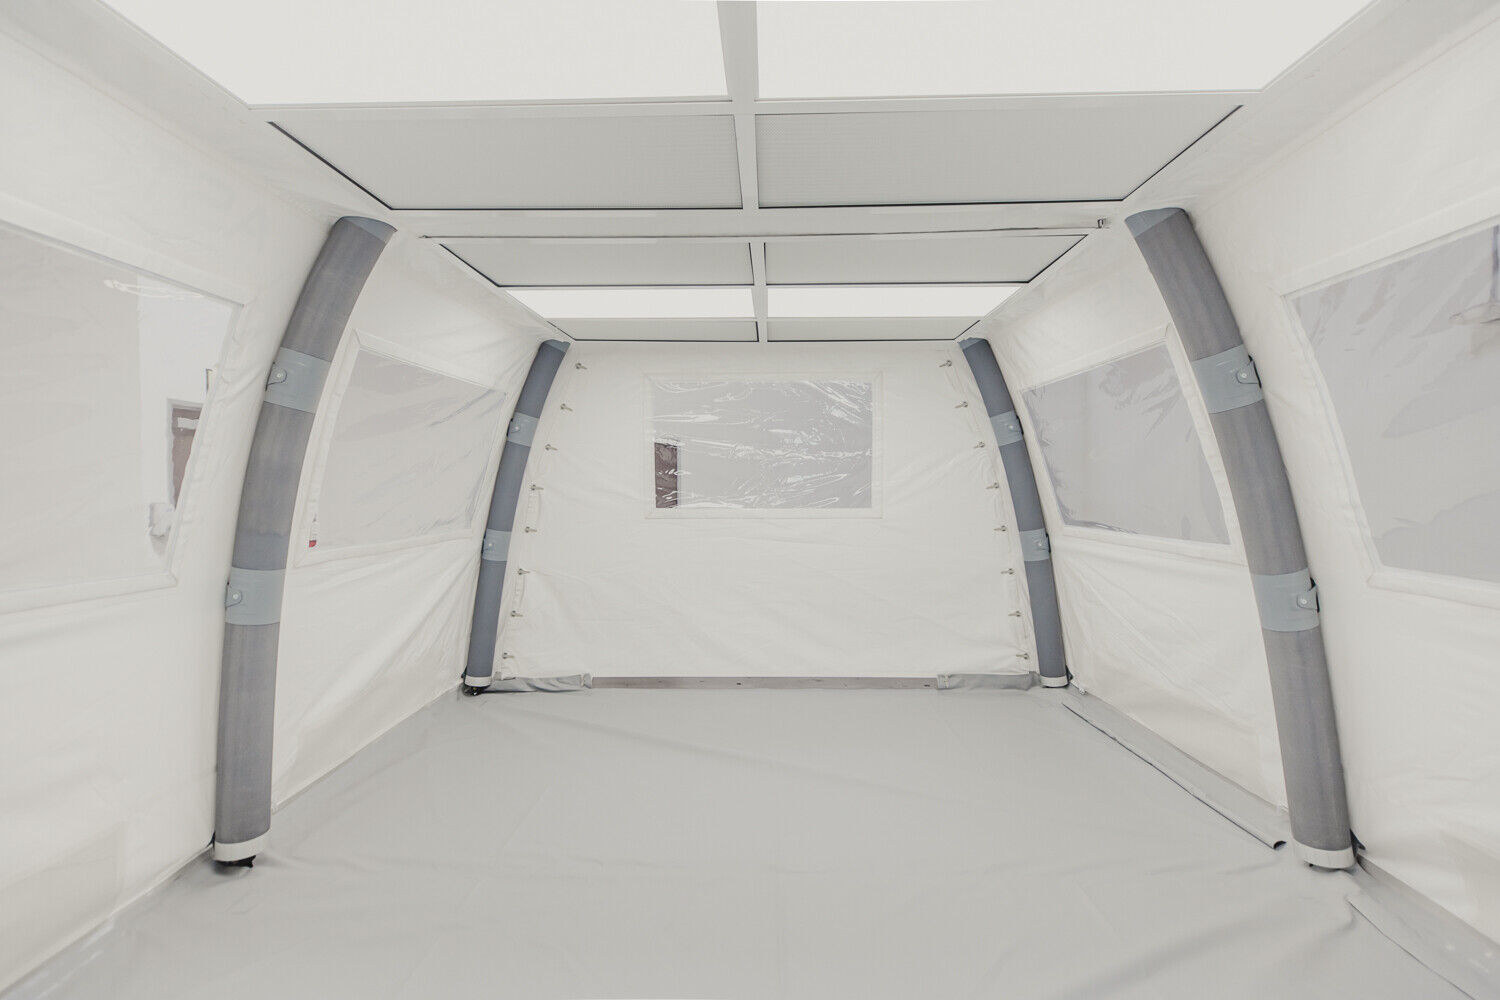 Interior of the Astropak instant cleanroom - Nixus ERA tent